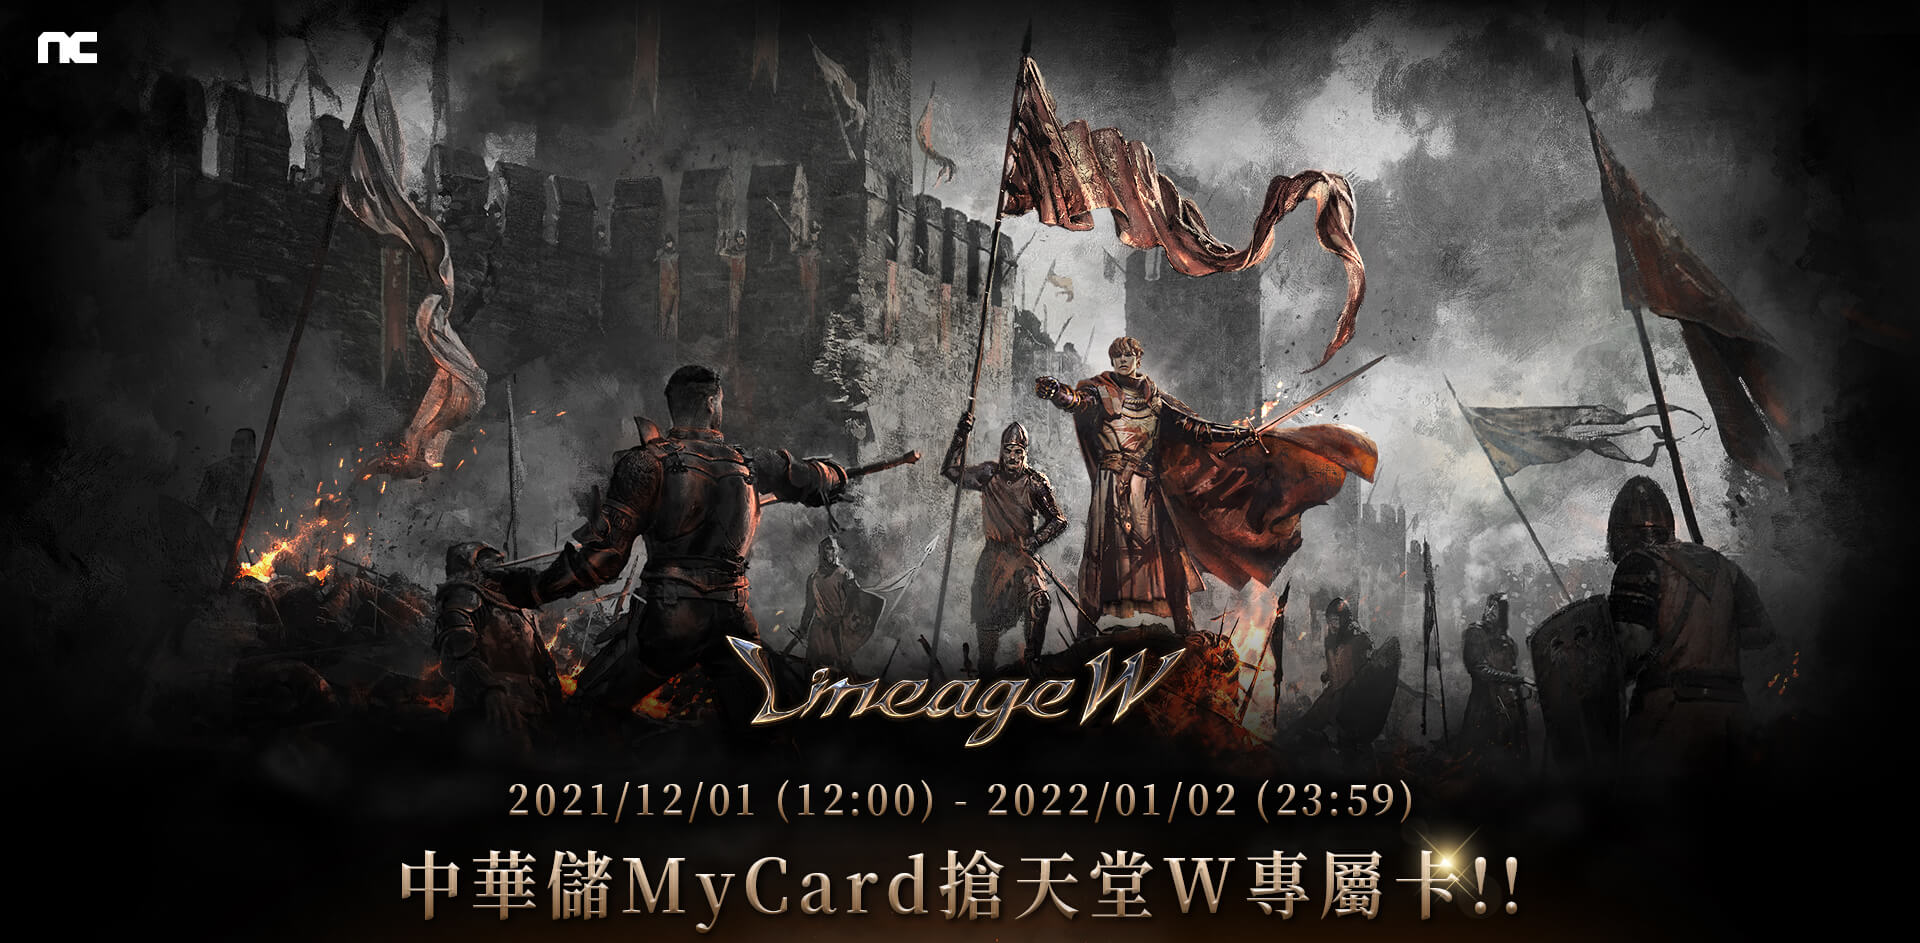   《天堂W》MyCard儲值享超值好禮回饋 | 中華電信